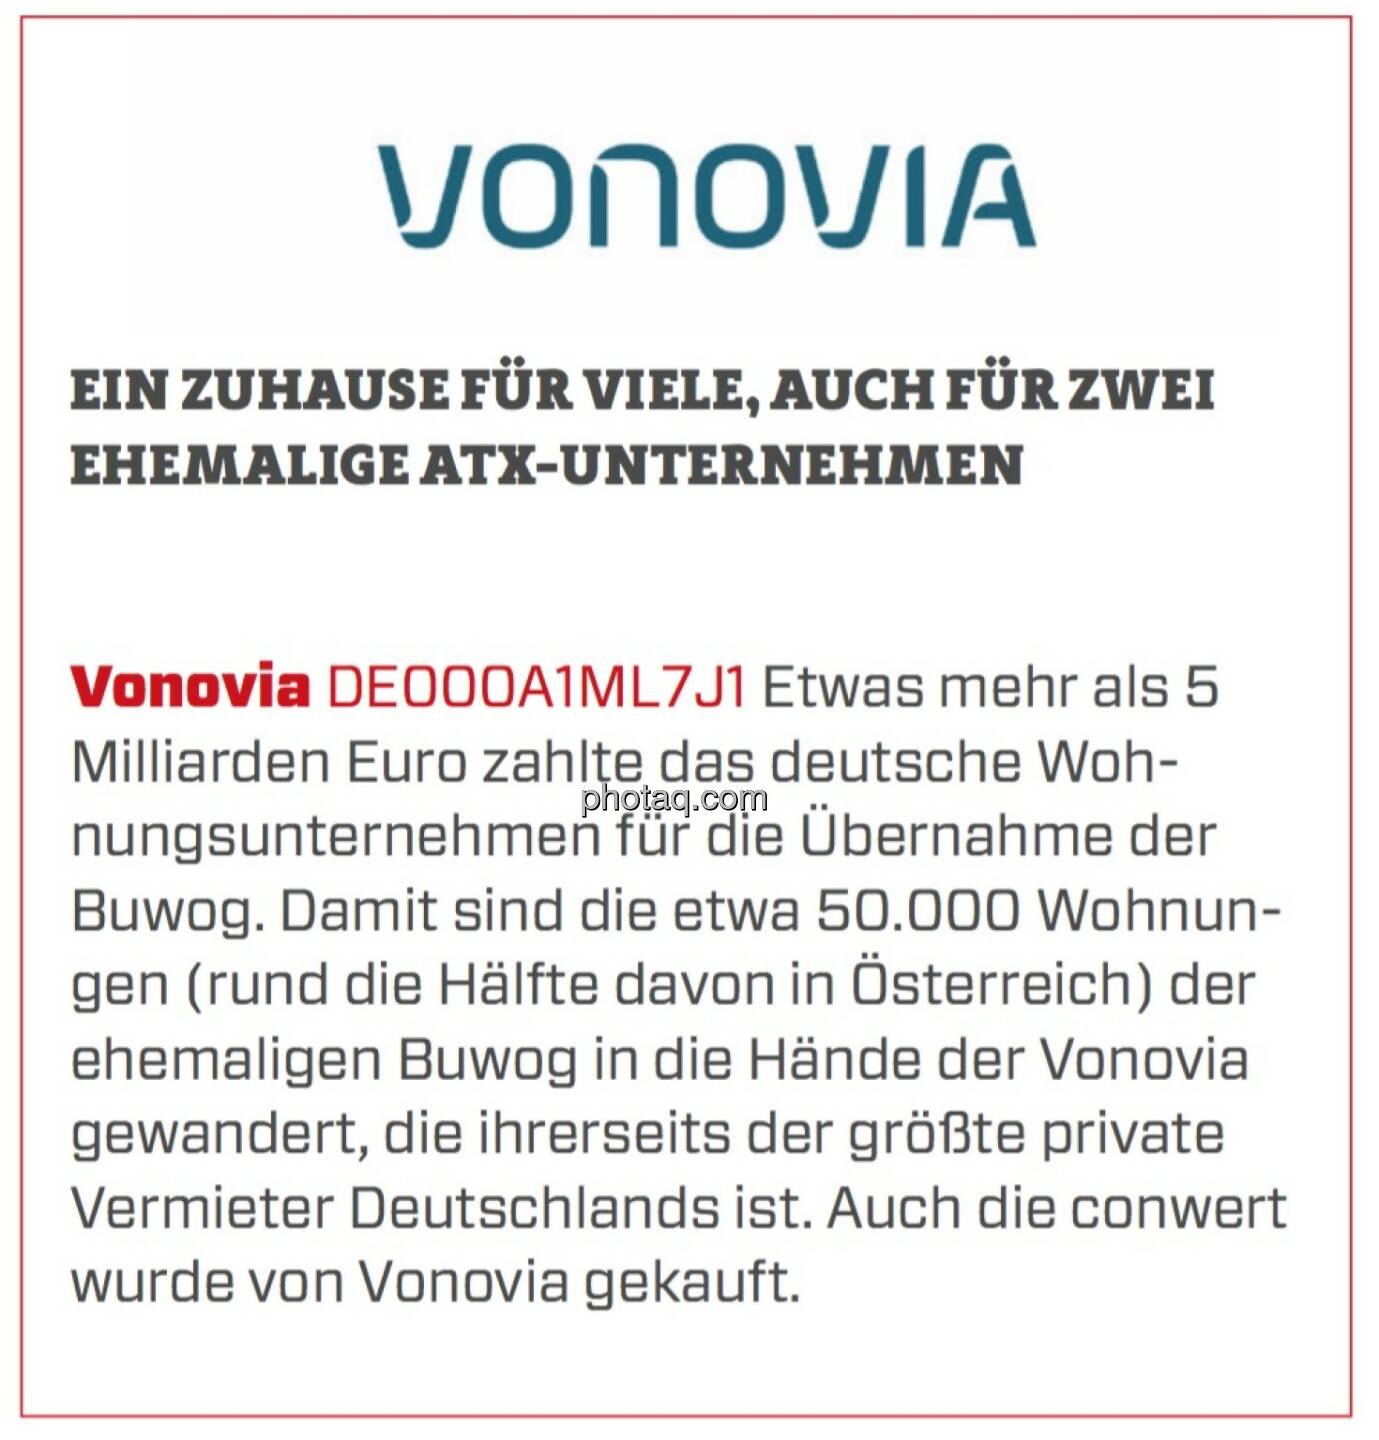 Vonovia - Ein Zuhause für viele, auch für zwei ehemalige ATX-Unternehmen: Etwas mehr als 5 Milliarden Euro zahlte das deutsche Wohnungsunternehmen für die Übernahme der Buwog. Damit sind die etwa 50.000 Wohnungen (rund die Hälfte davon in Österreich) der ehemaligen Buwog in die Hände der Vonovia gewandert, die ihrerseits der größte private Vermieter Deutschlands ist. Auch die conwert wurde von Vonovia gekauft.